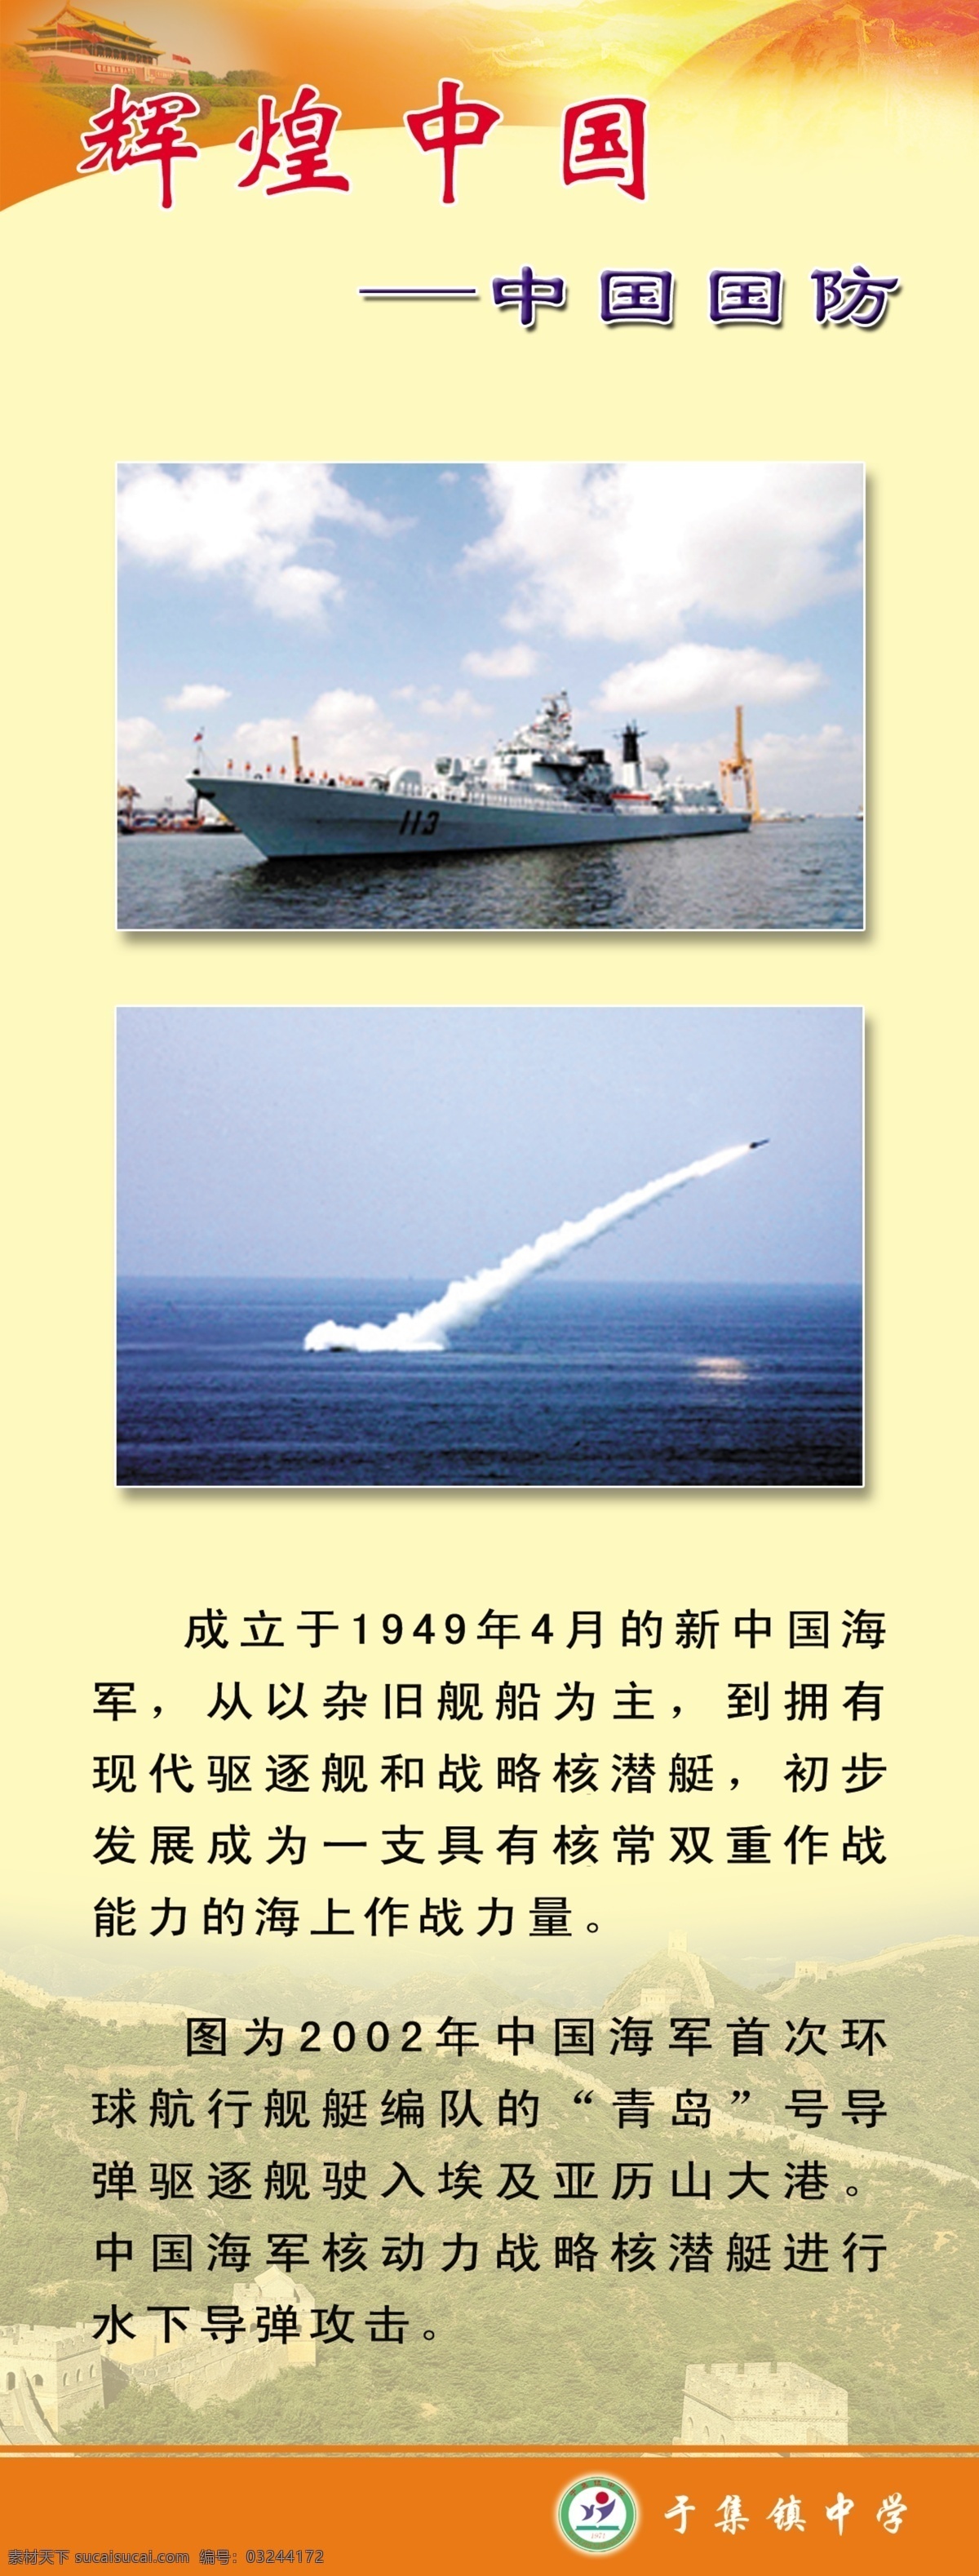 中国辉煌 中国 辉煌 国防 学校国防教育 国防教育 导弹 学校类 展板模板 广告设计模板 源文件